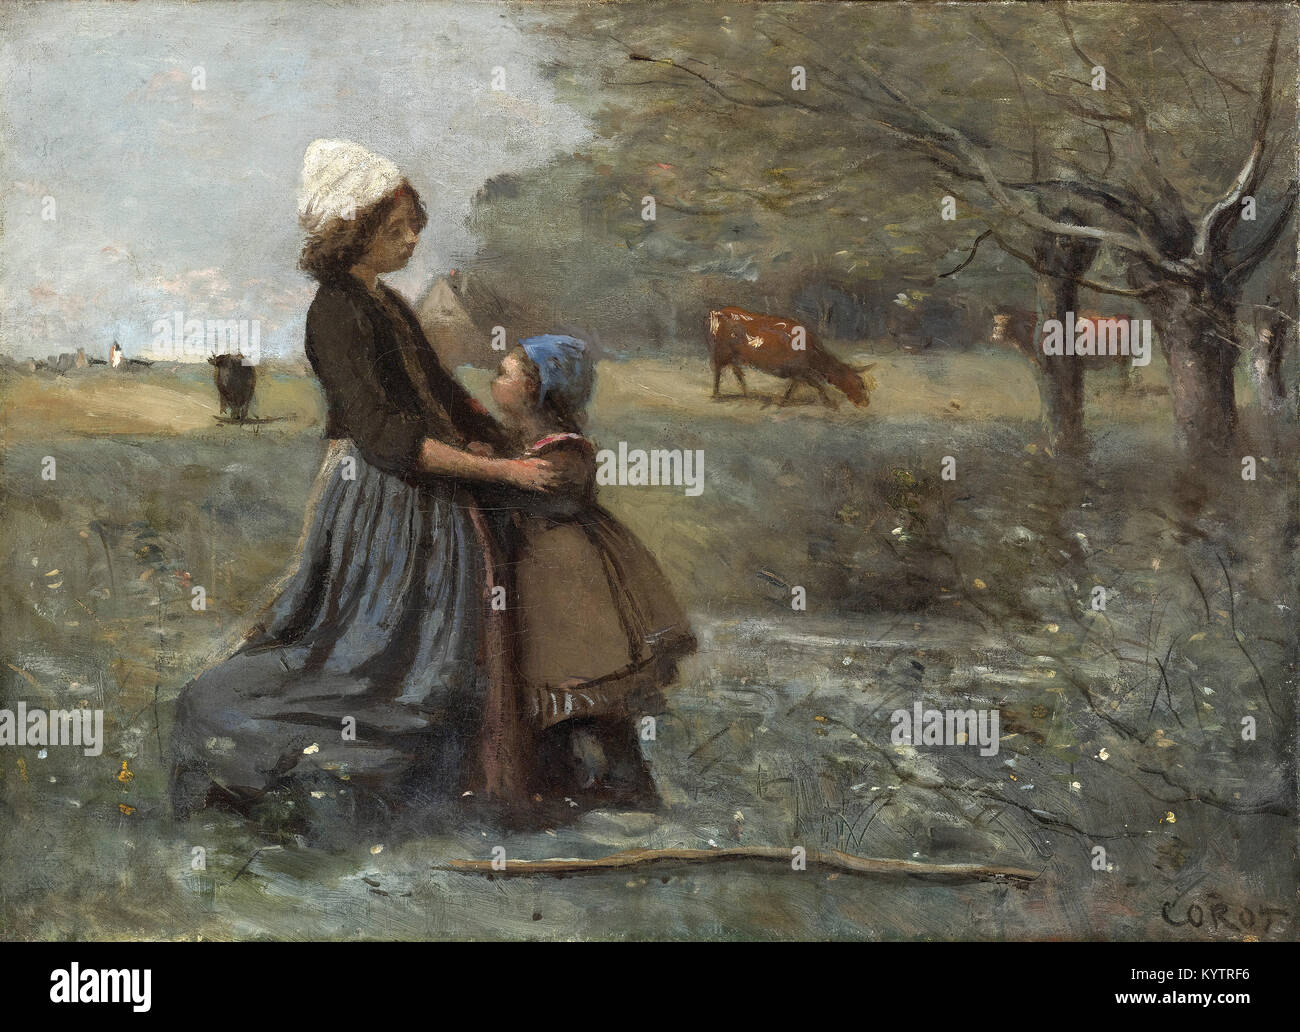 Camille Corot - Les deux sœurs dans la prairie Stock Photo